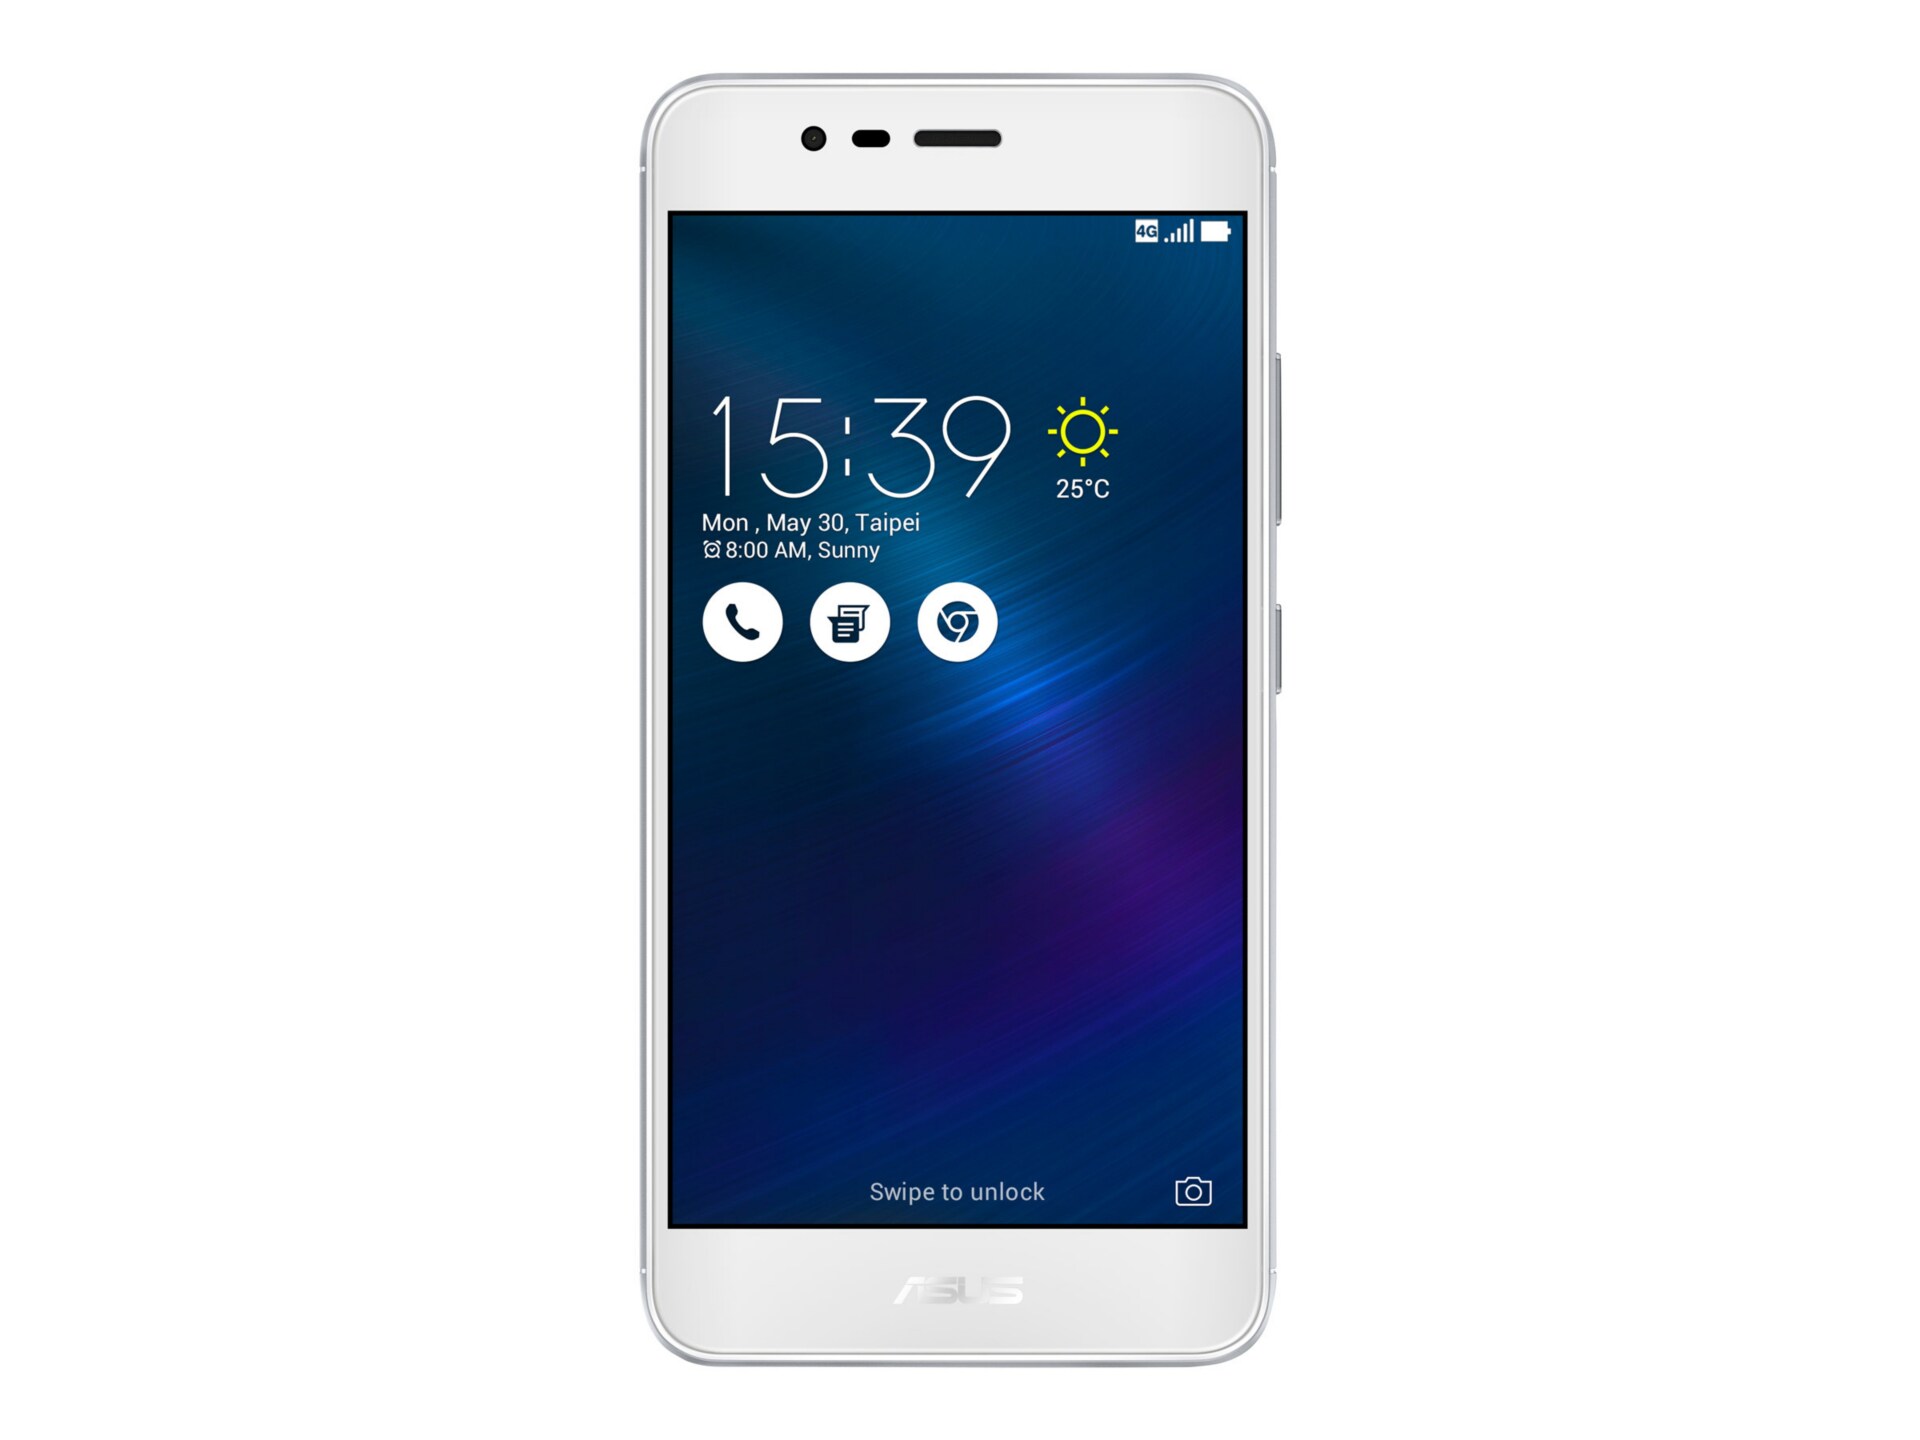 ASUS ZenFone 3 Max (ZC520TL) - glacier silver - 4G LTE - 16 GB - GSM - smartphone